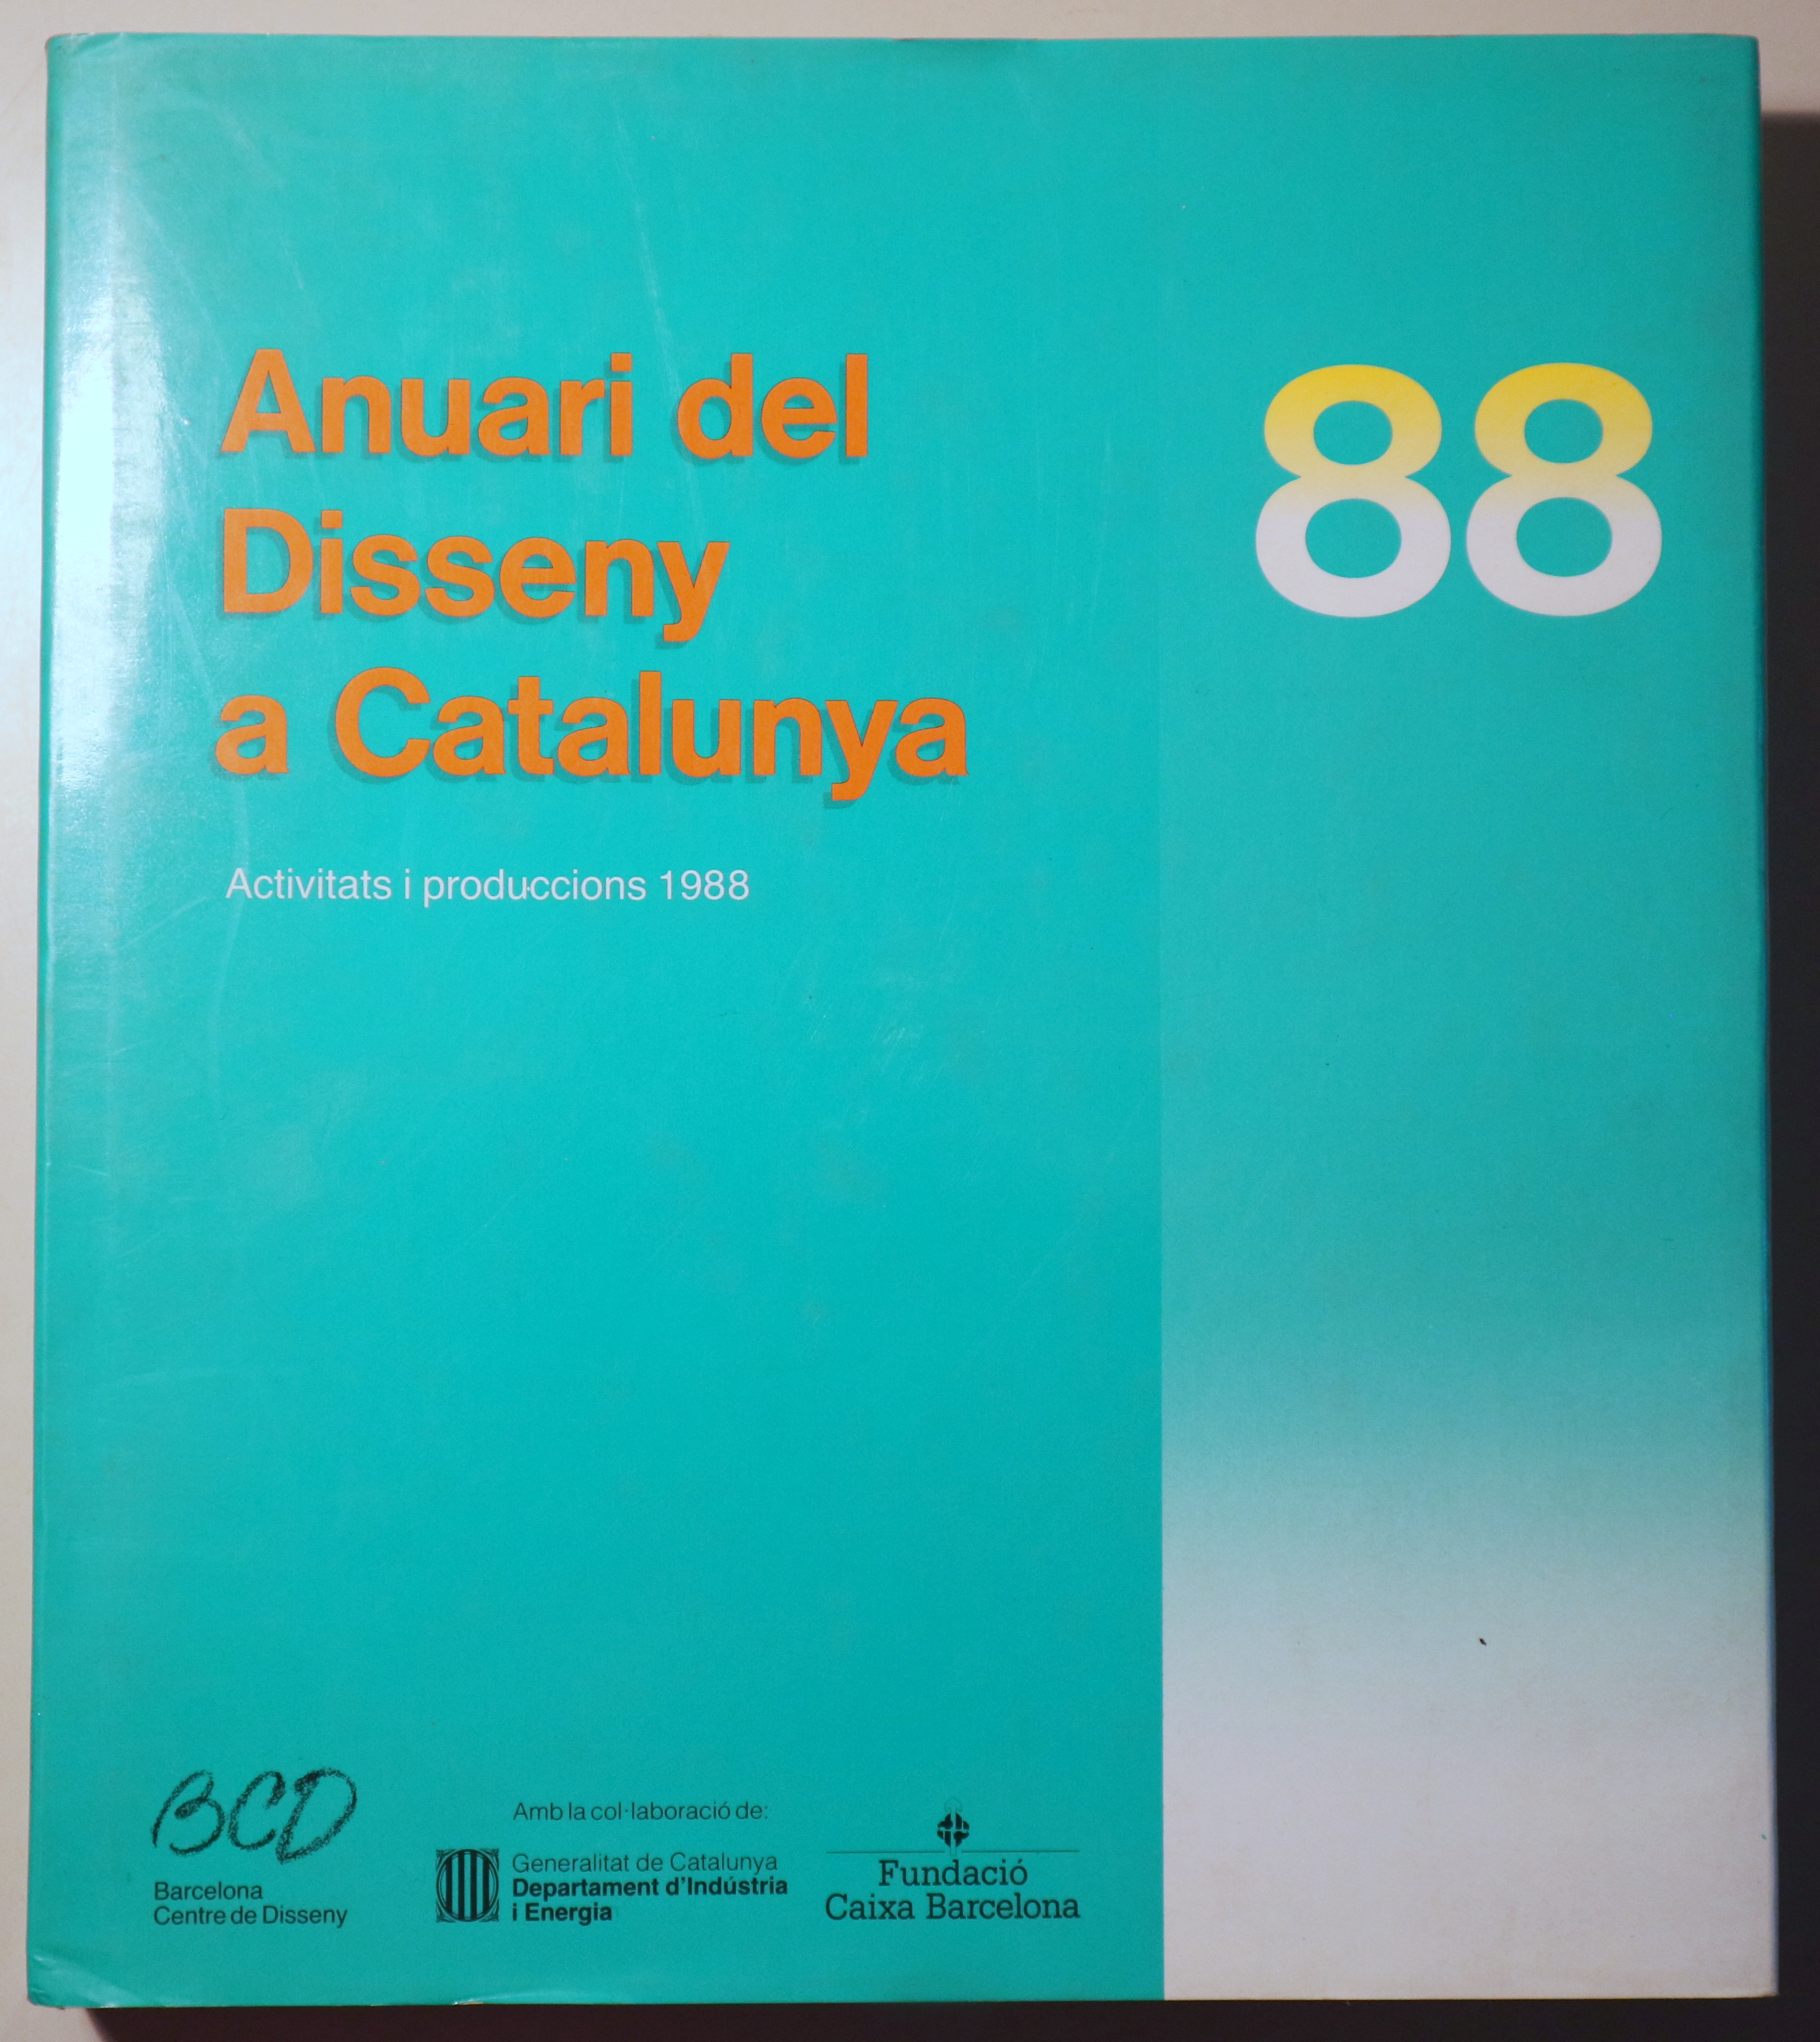 ANUARI DEL DISSENY A CATALUNYA 88 - Barcelona 1989